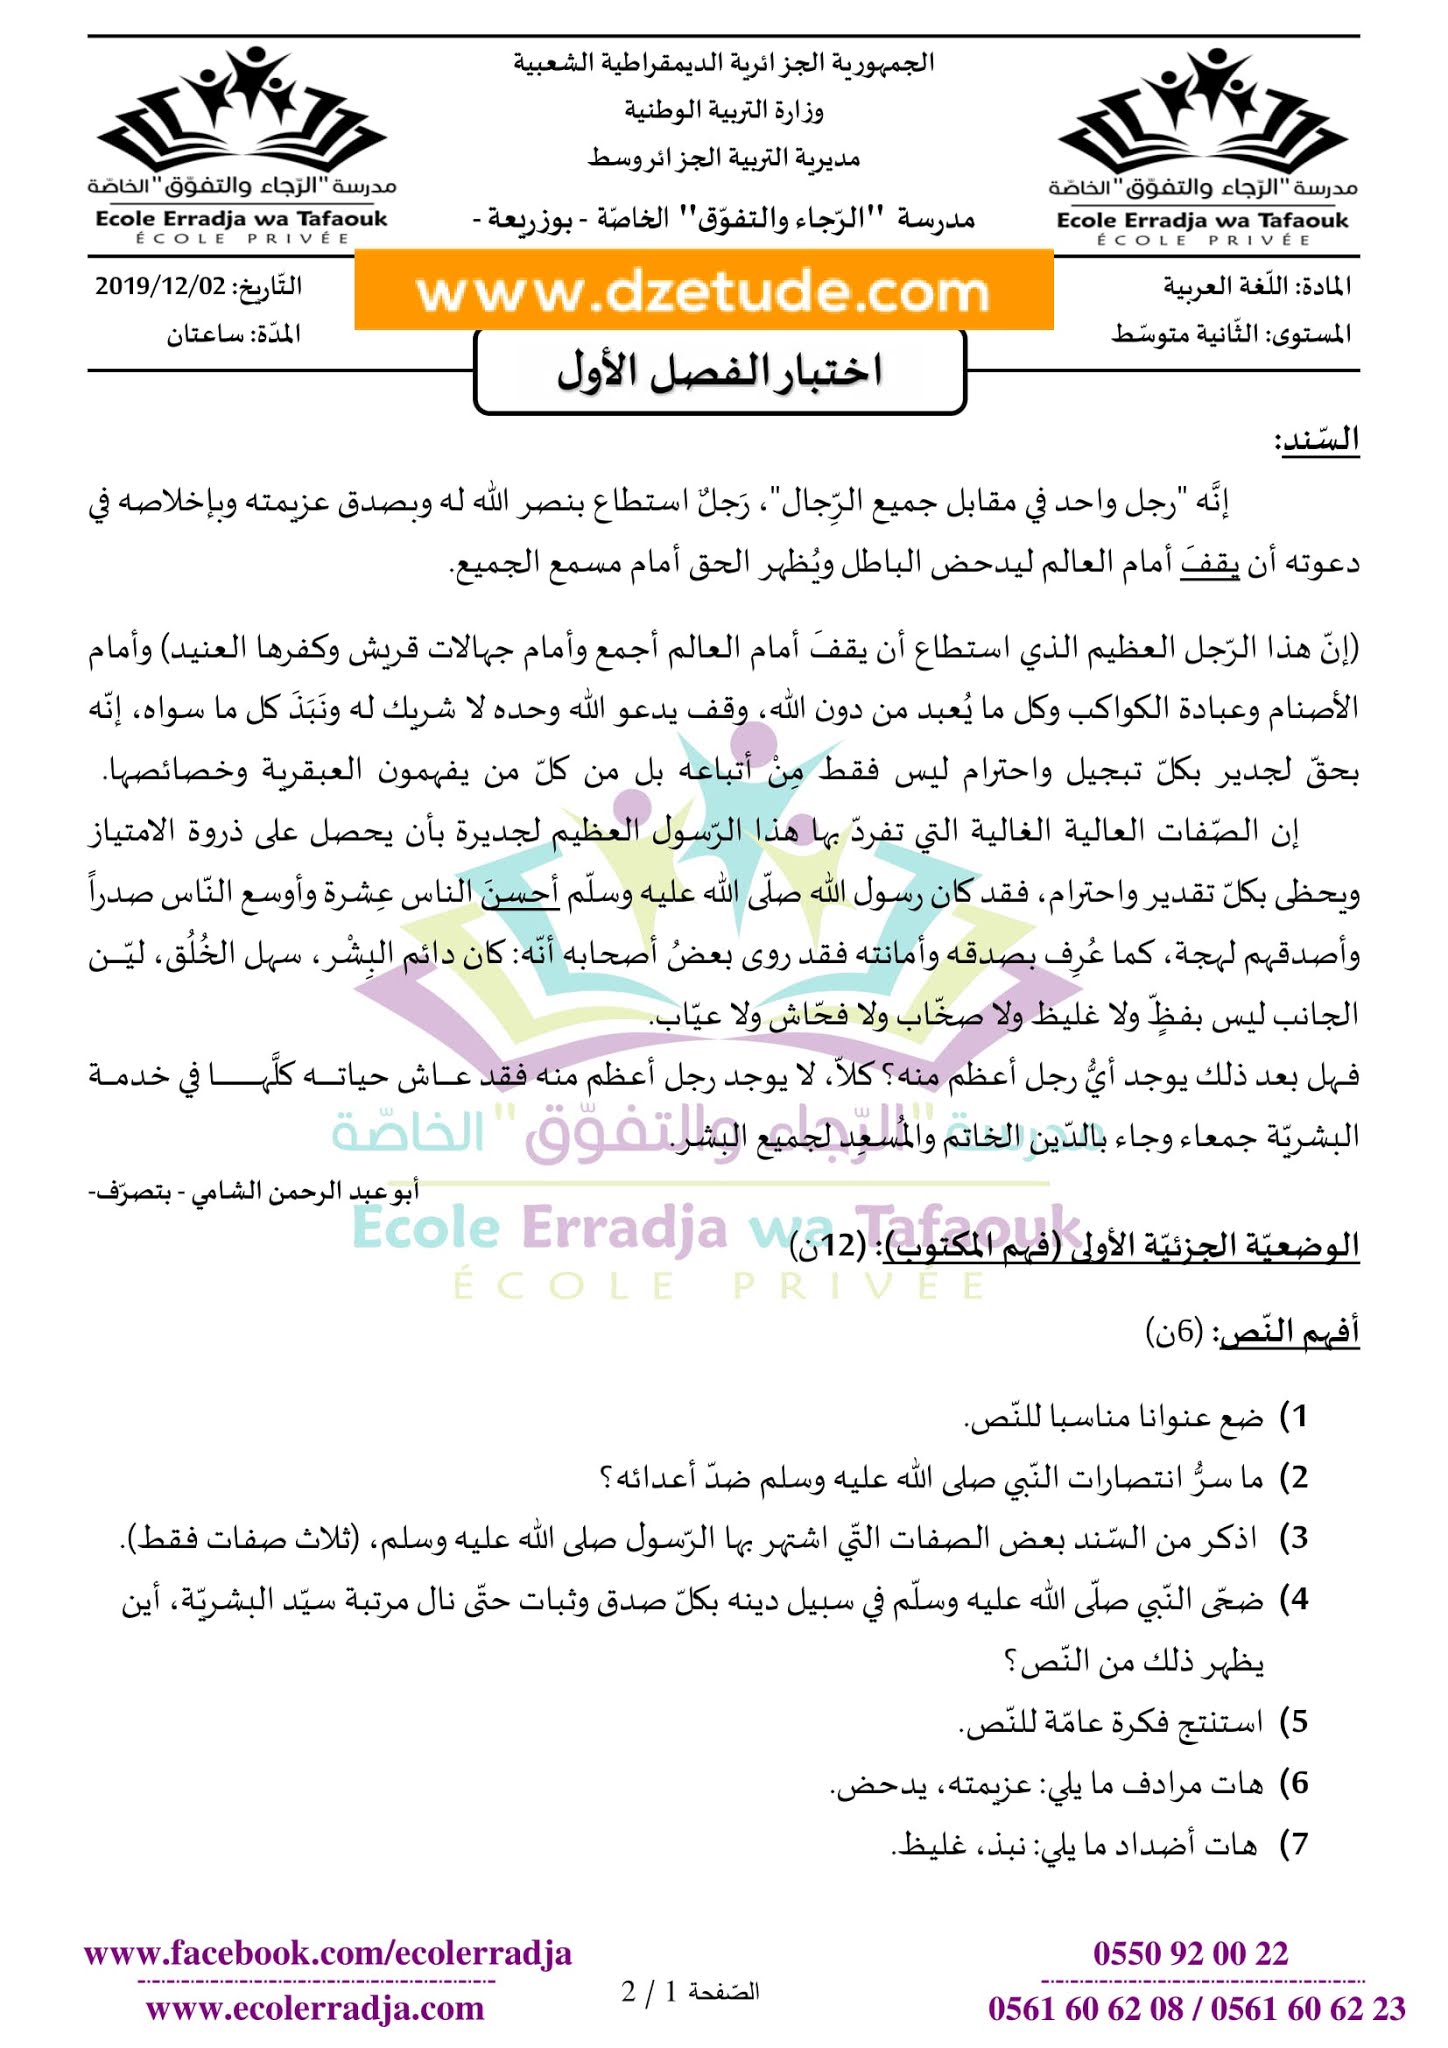 إختبار اللغة العربية الفصل الأول للسنة الثانية متوسط - الجيل الثاني نموذج 10